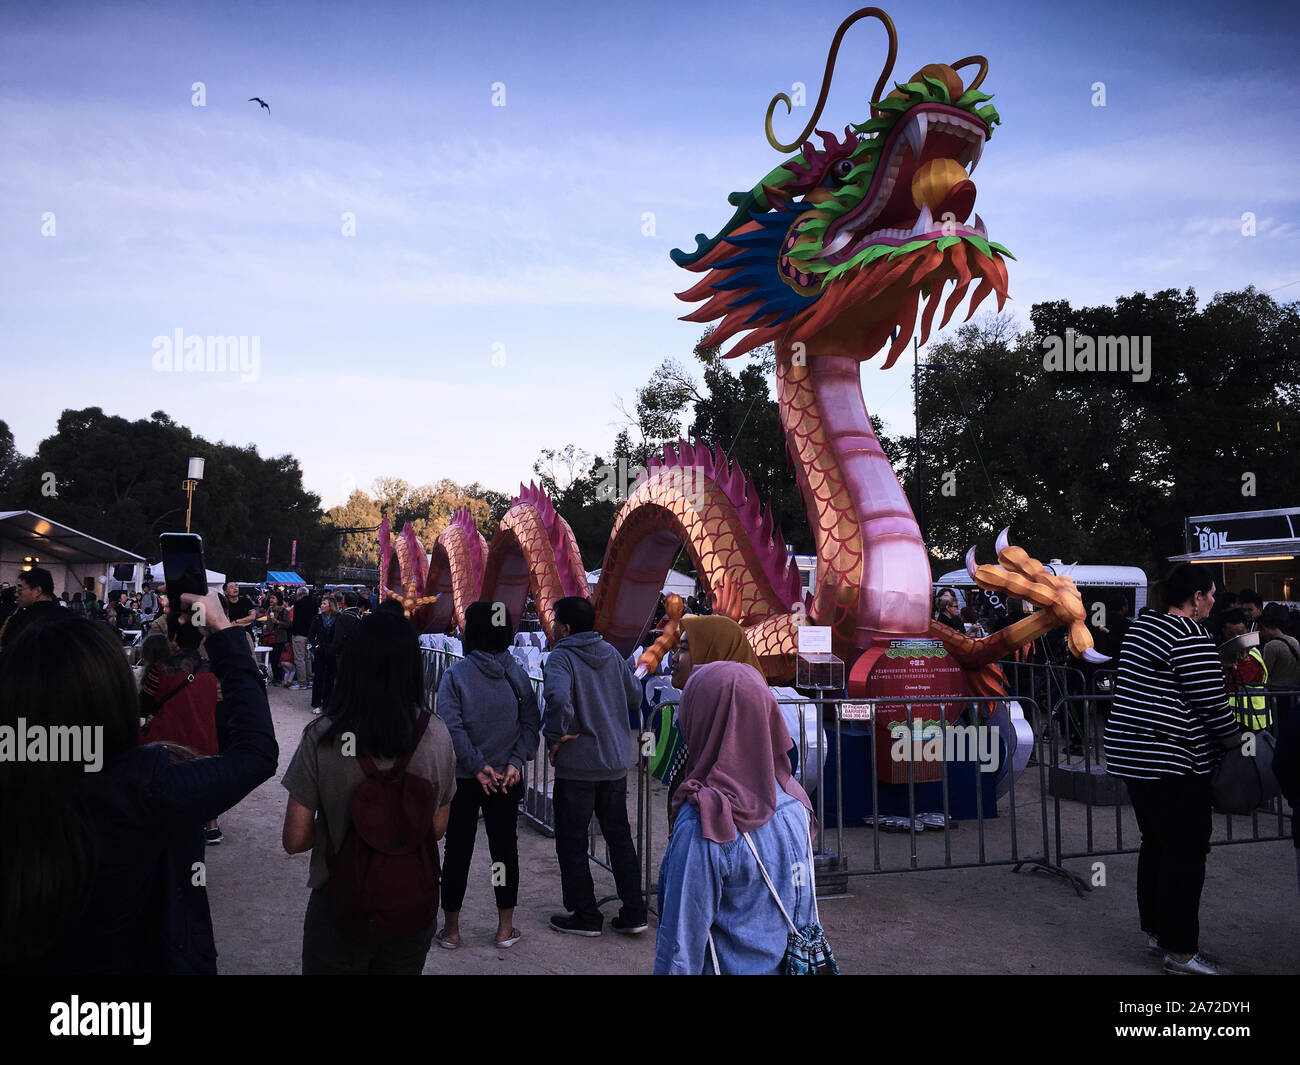 La linterna del Dragón Eterno 27m de largo x 6m de alto. El festival Light Up Melbourne rinde homenaje al festival chino Lantern Foto de stock